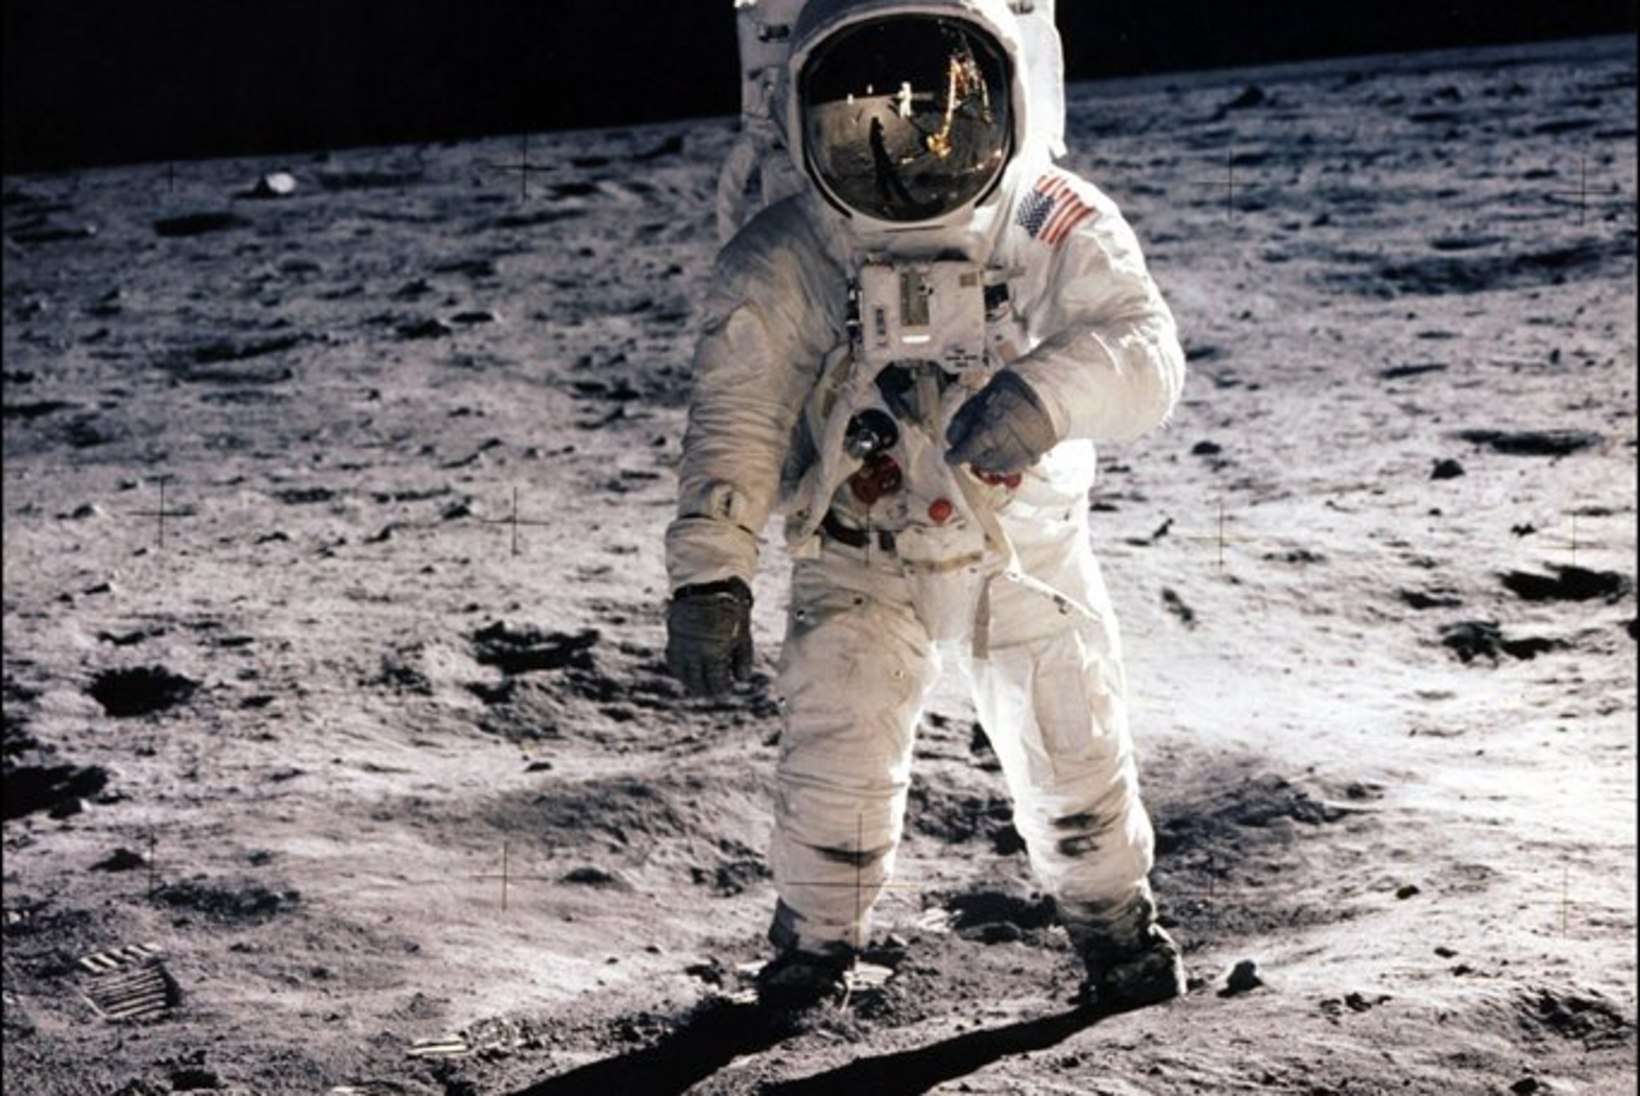 "Kui näete Kuud endale naeratamas, mõelge Neil Armstrongi peale ja tehke Kuule silma."